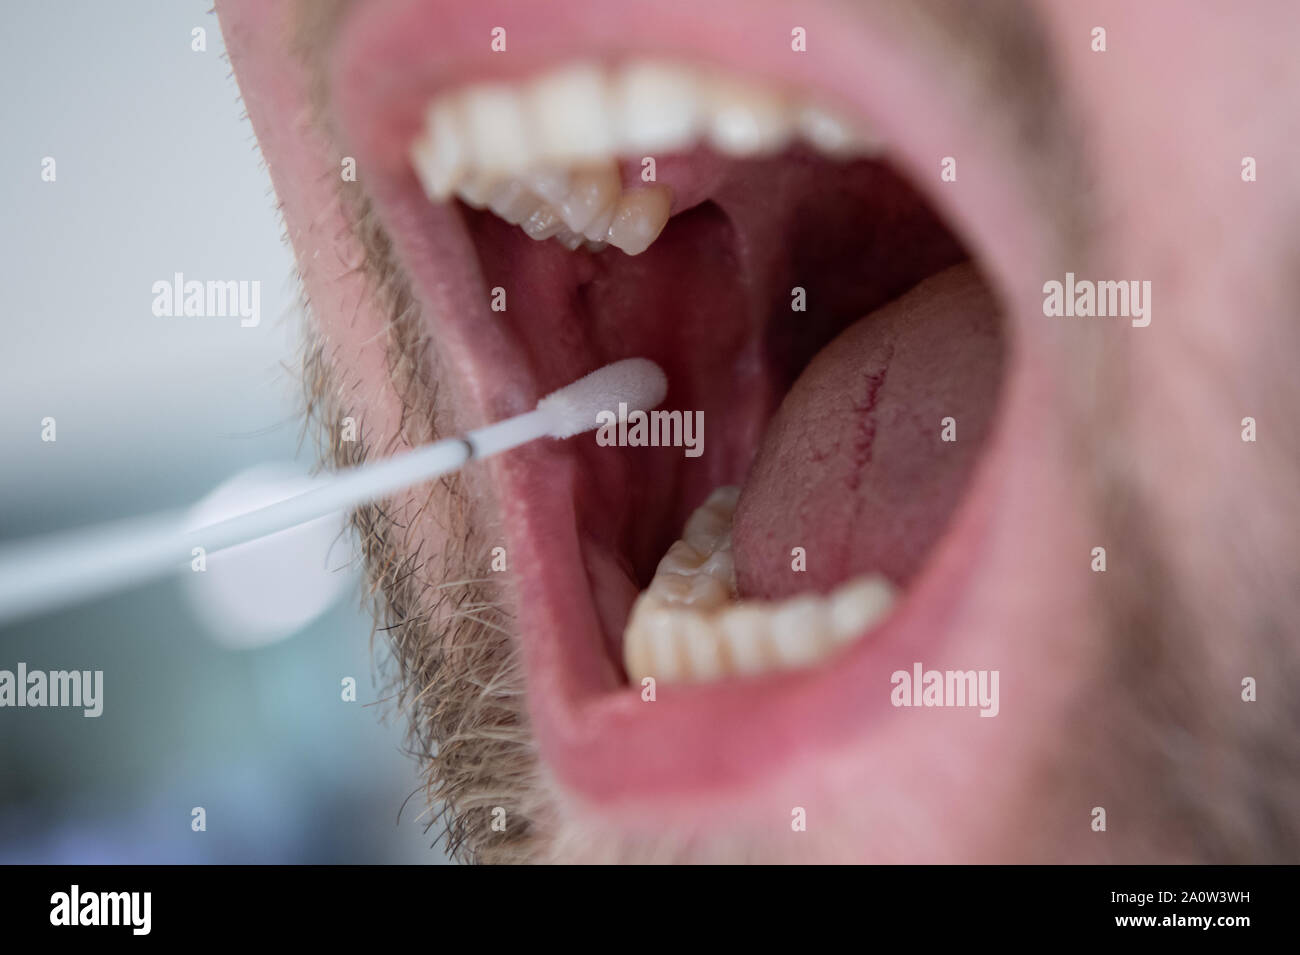 Monaco di Baviera, Germania. 26 Ago, 2019. Un uomo utilizza un tampone di cotone per prendere la mucosa orale di cellule per un campione di DNA. Credito: Sven Hoppe/dpa/Alamy Live News Foto Stock